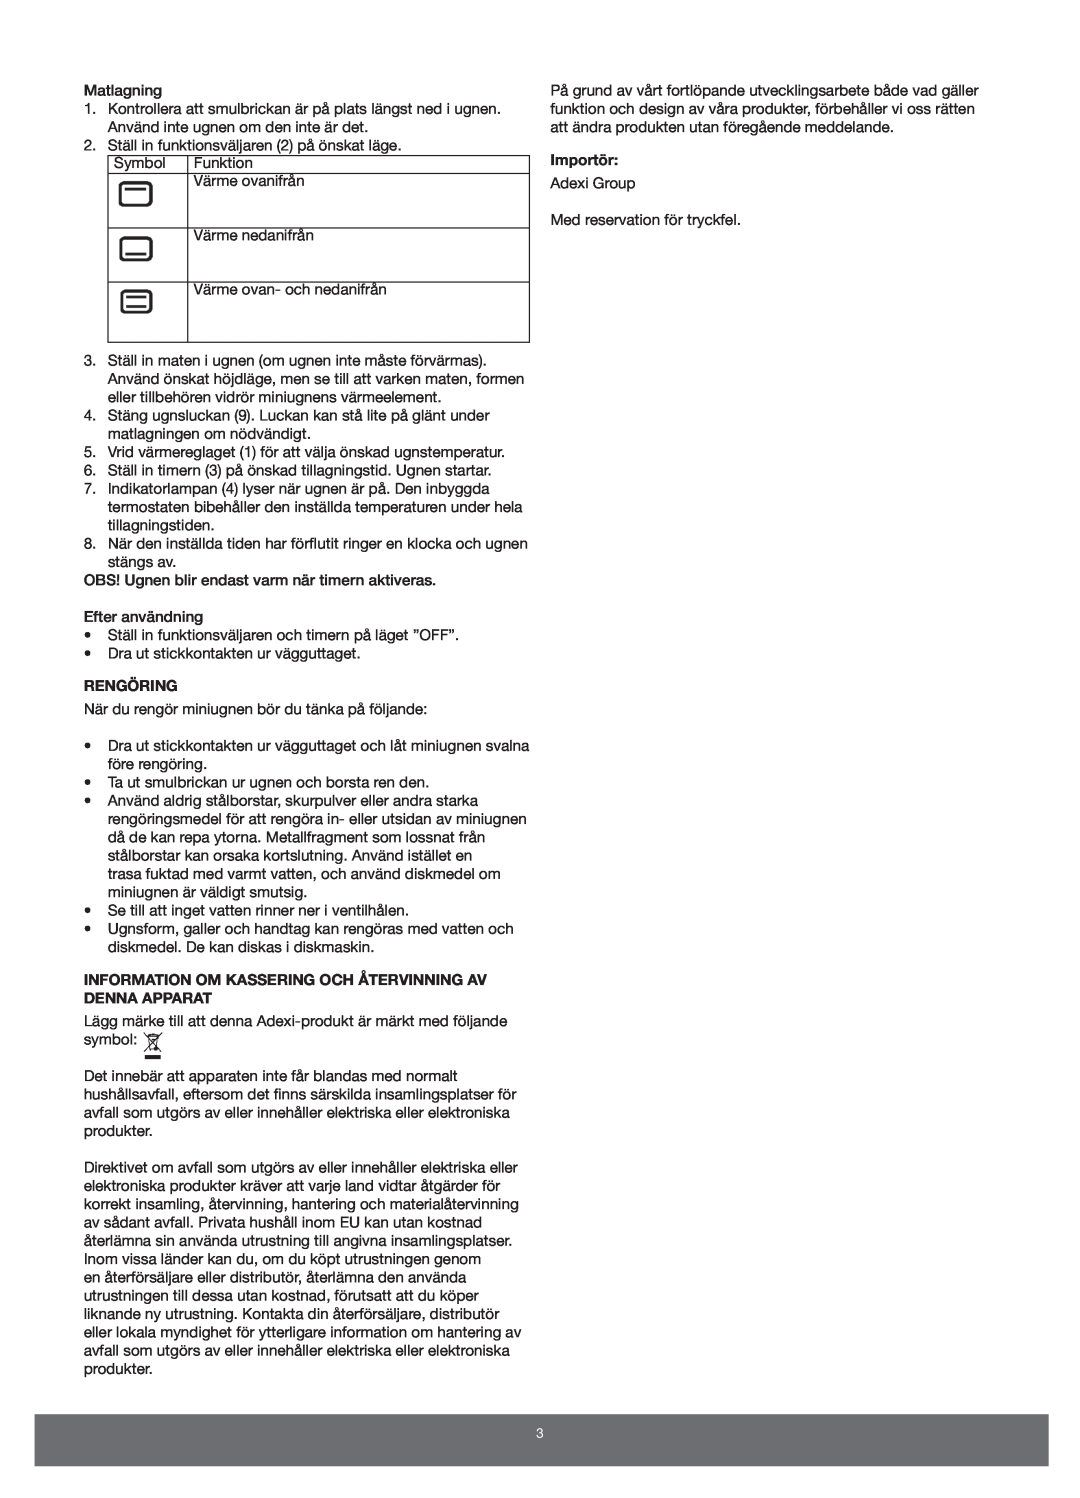 Melissa 651-007 manual Rengöring, Information Om Kassering Och Återvinning Av Denna Apparat, Importör 